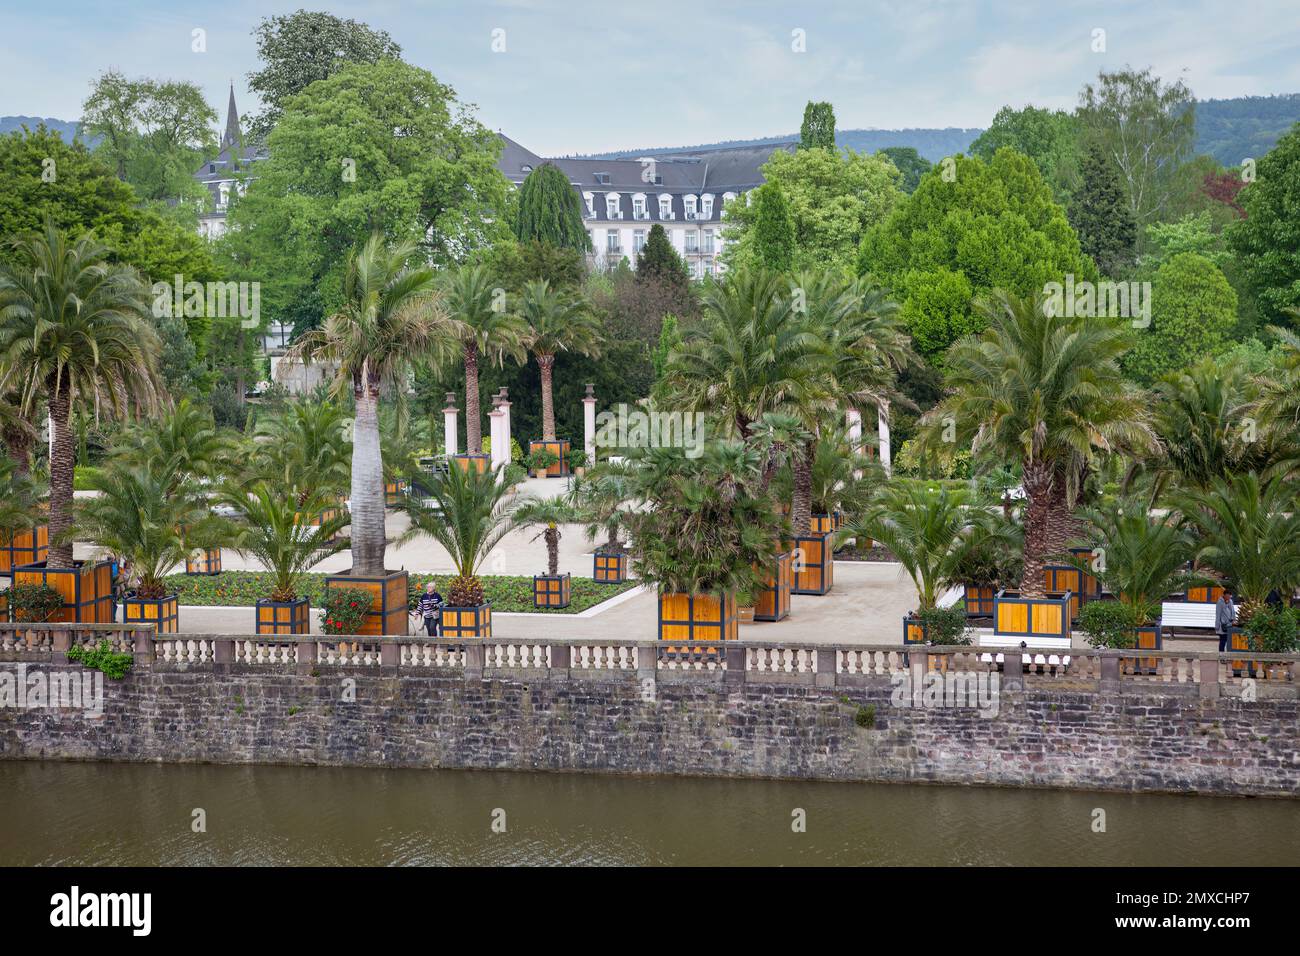 Il giardino di palme, Bad Pyrmont, distretto di Hamelin-Pyrmont, bassa Sassonia, Germania Foto Stock